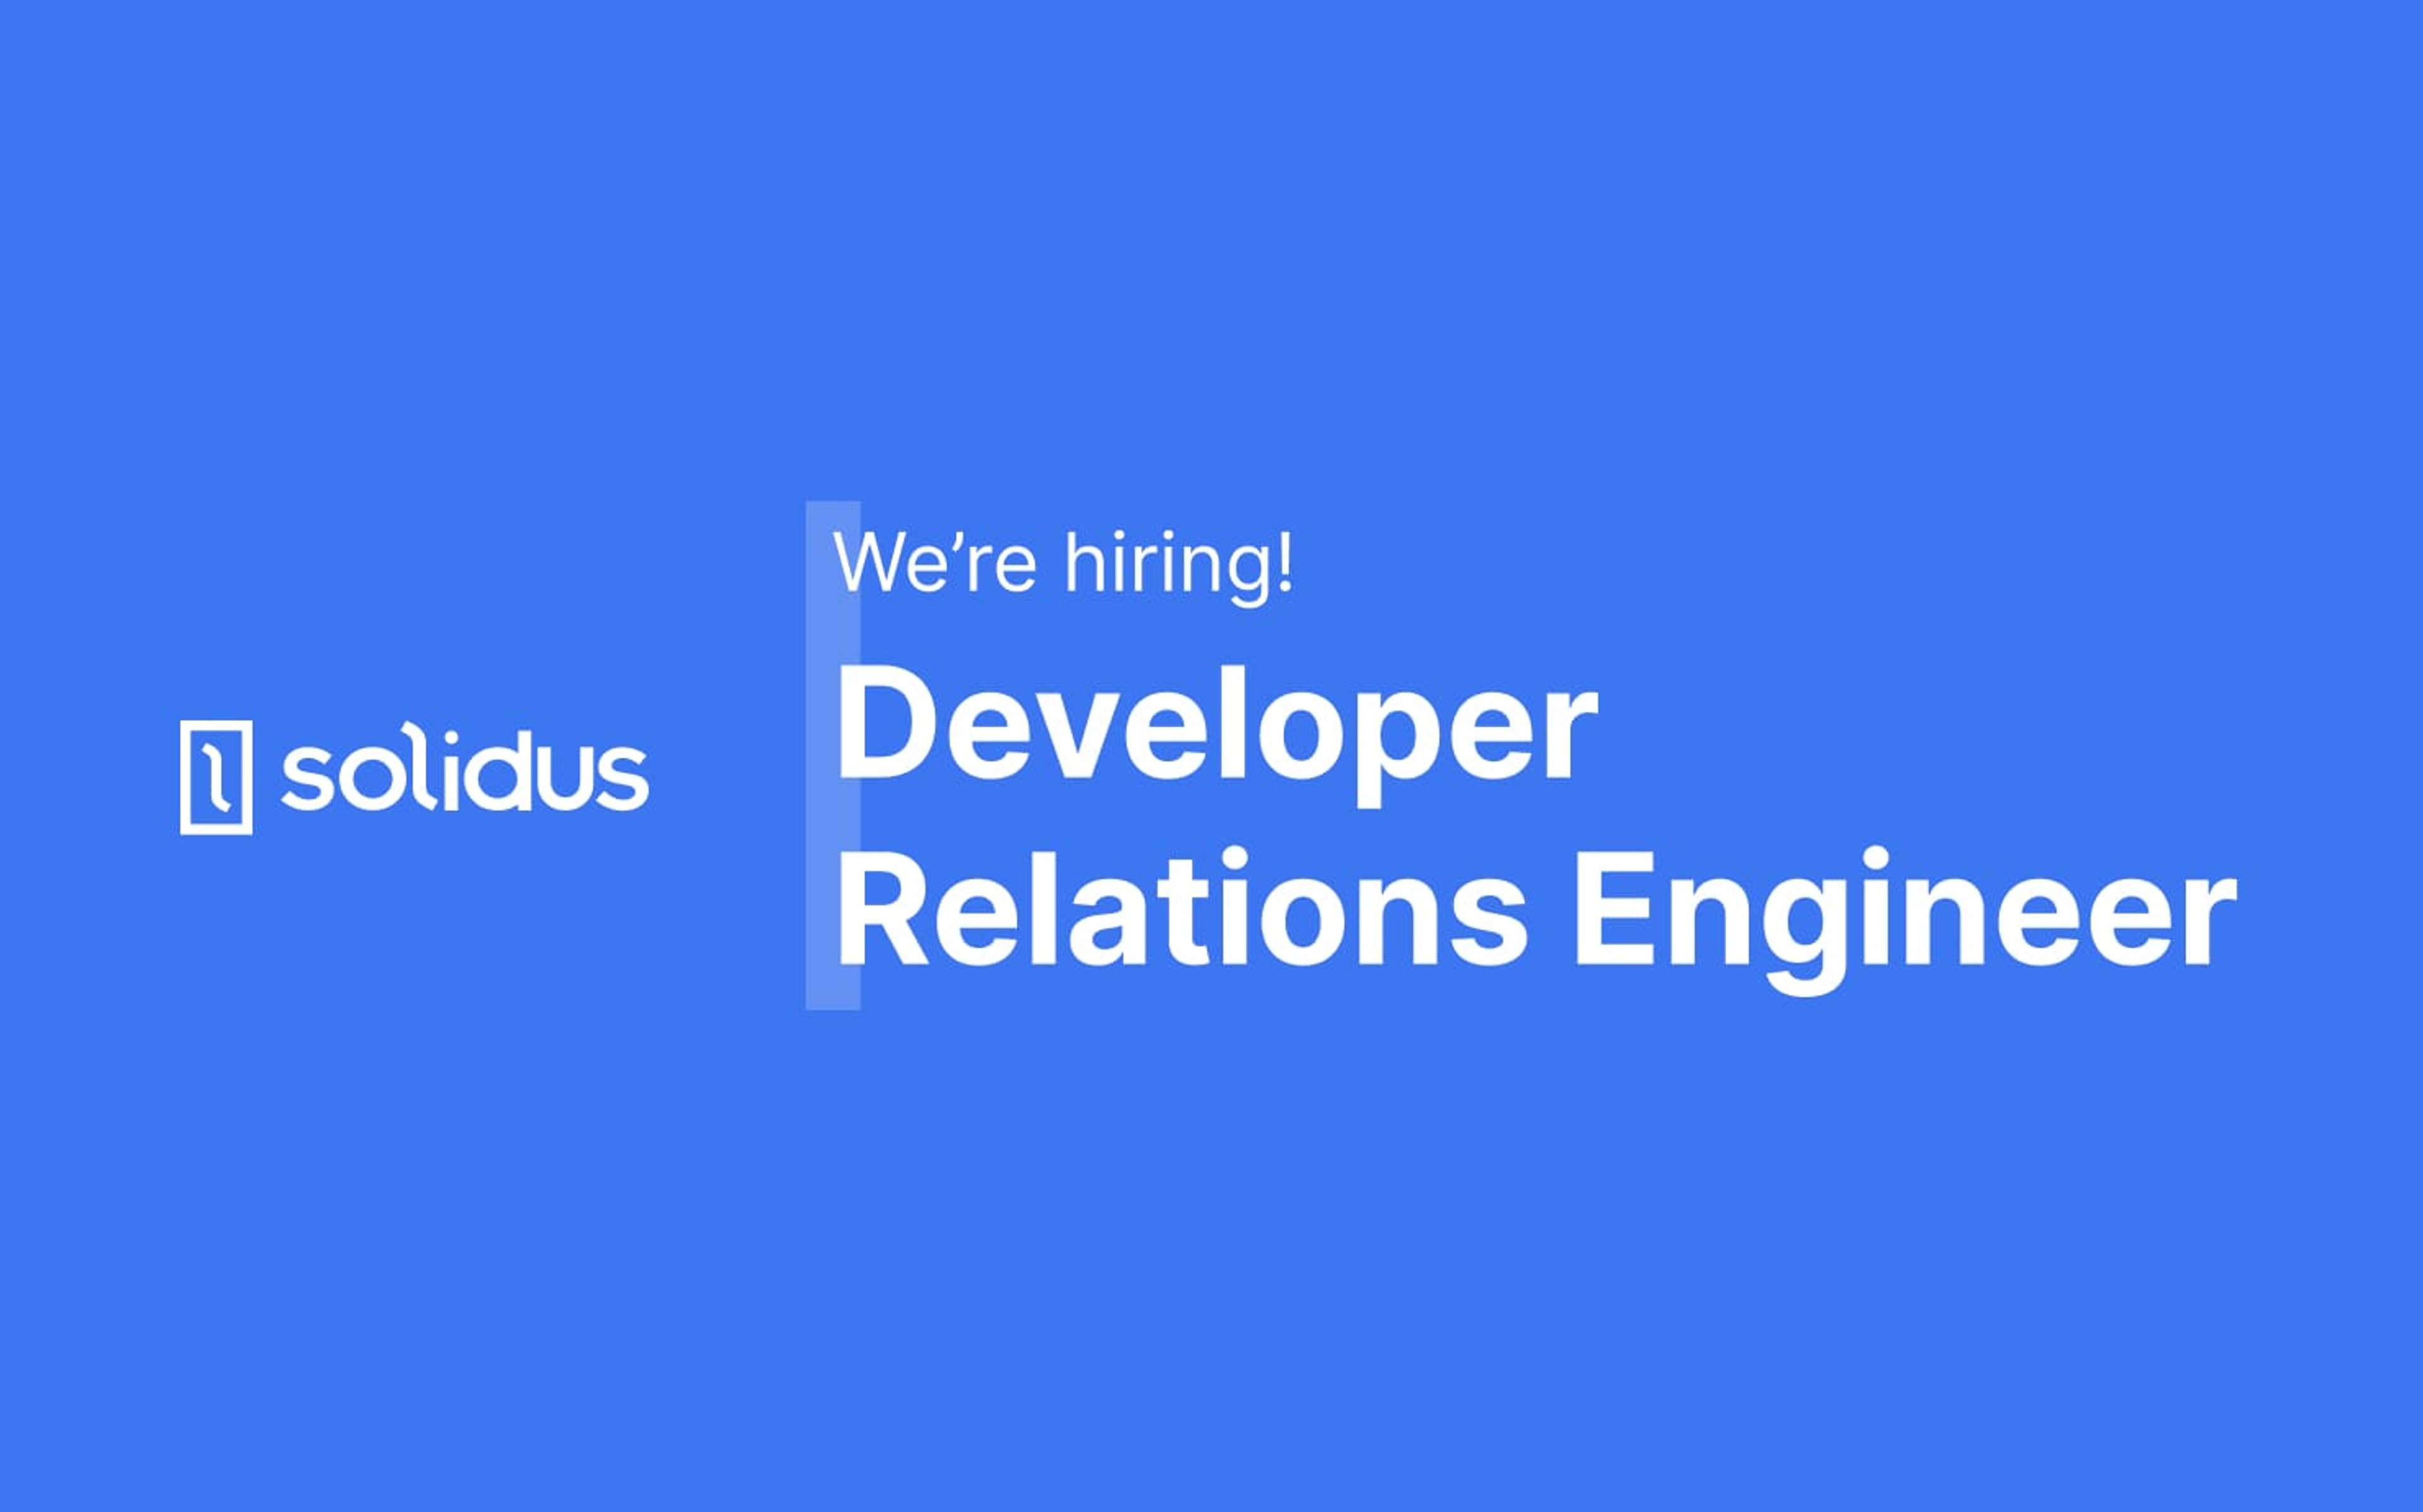 Solidus is hiring a Dev Rel Engineer